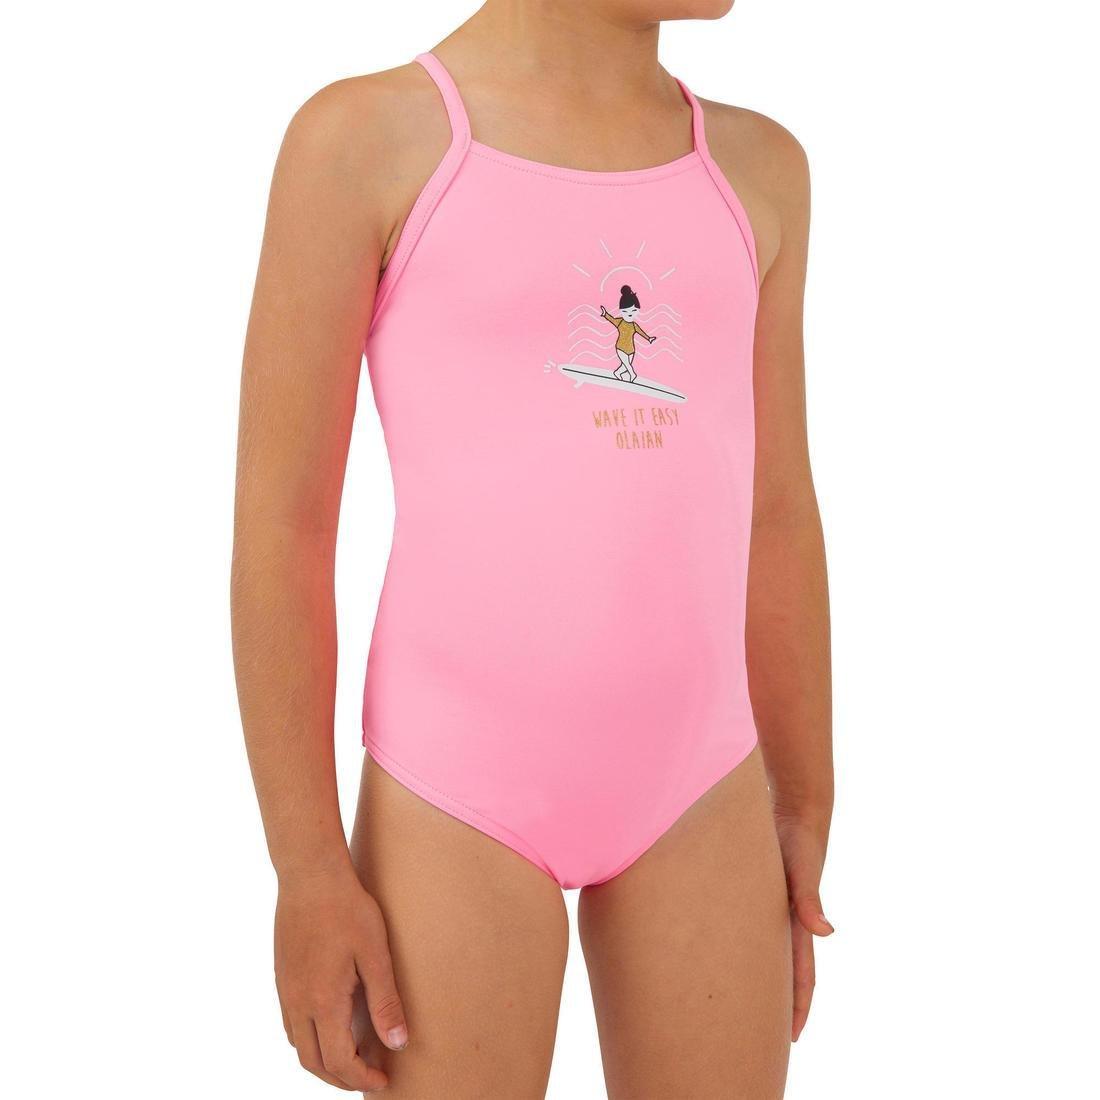 OLAIAN - 1-Piece Swimsuit Hanalei 100 - Neon, Fluo Pink